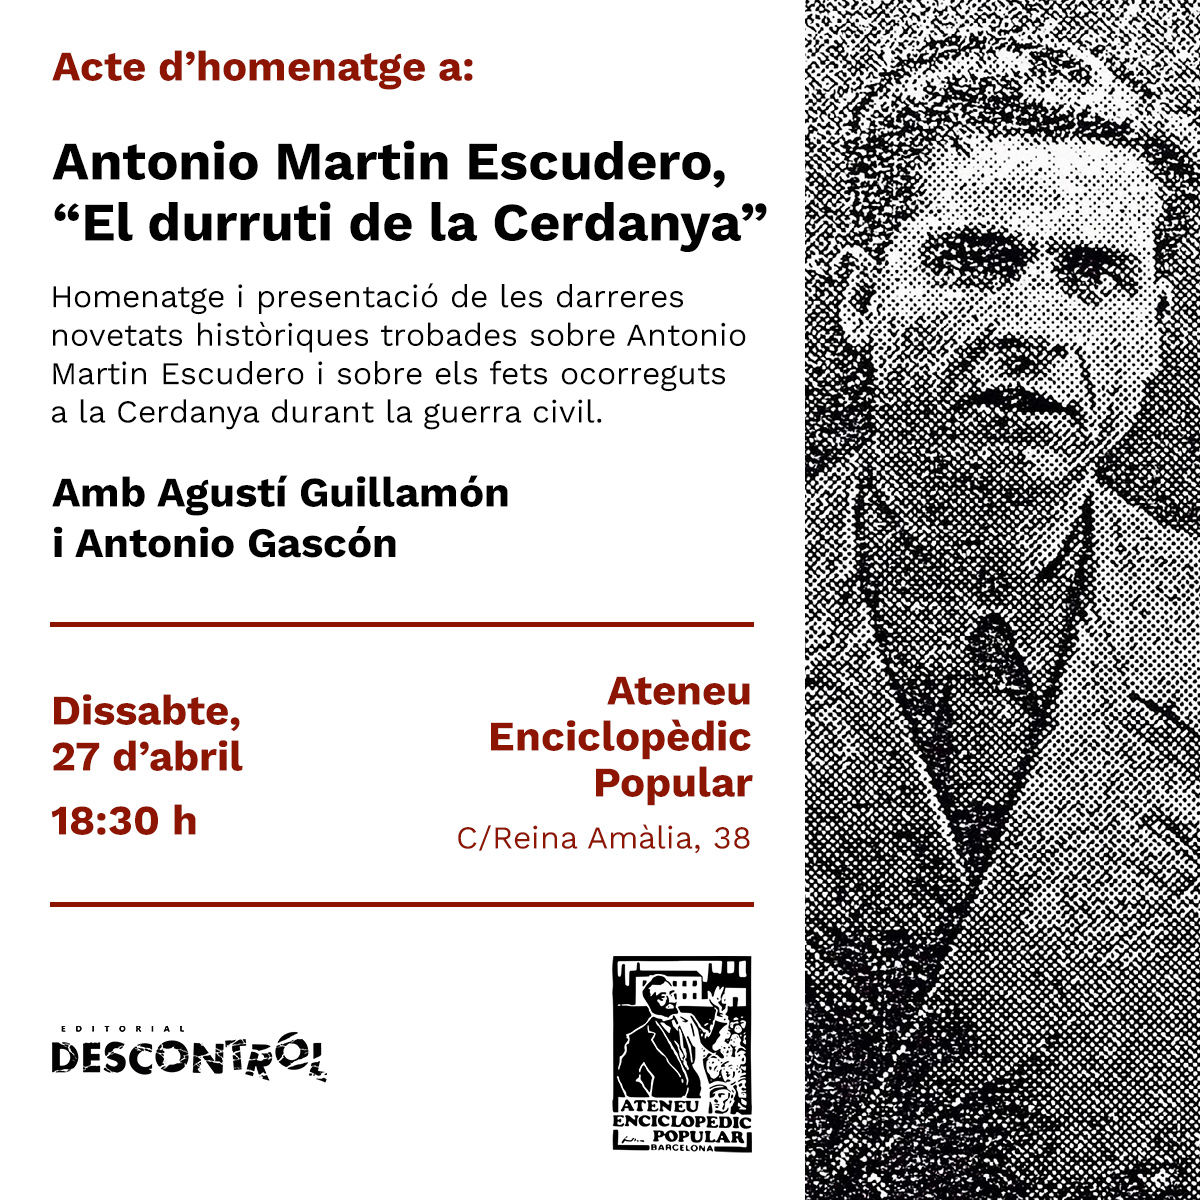 [BCN] Acte d'homenatge a Antonio Martin Escudero, “El durruti de la Cerdanya”